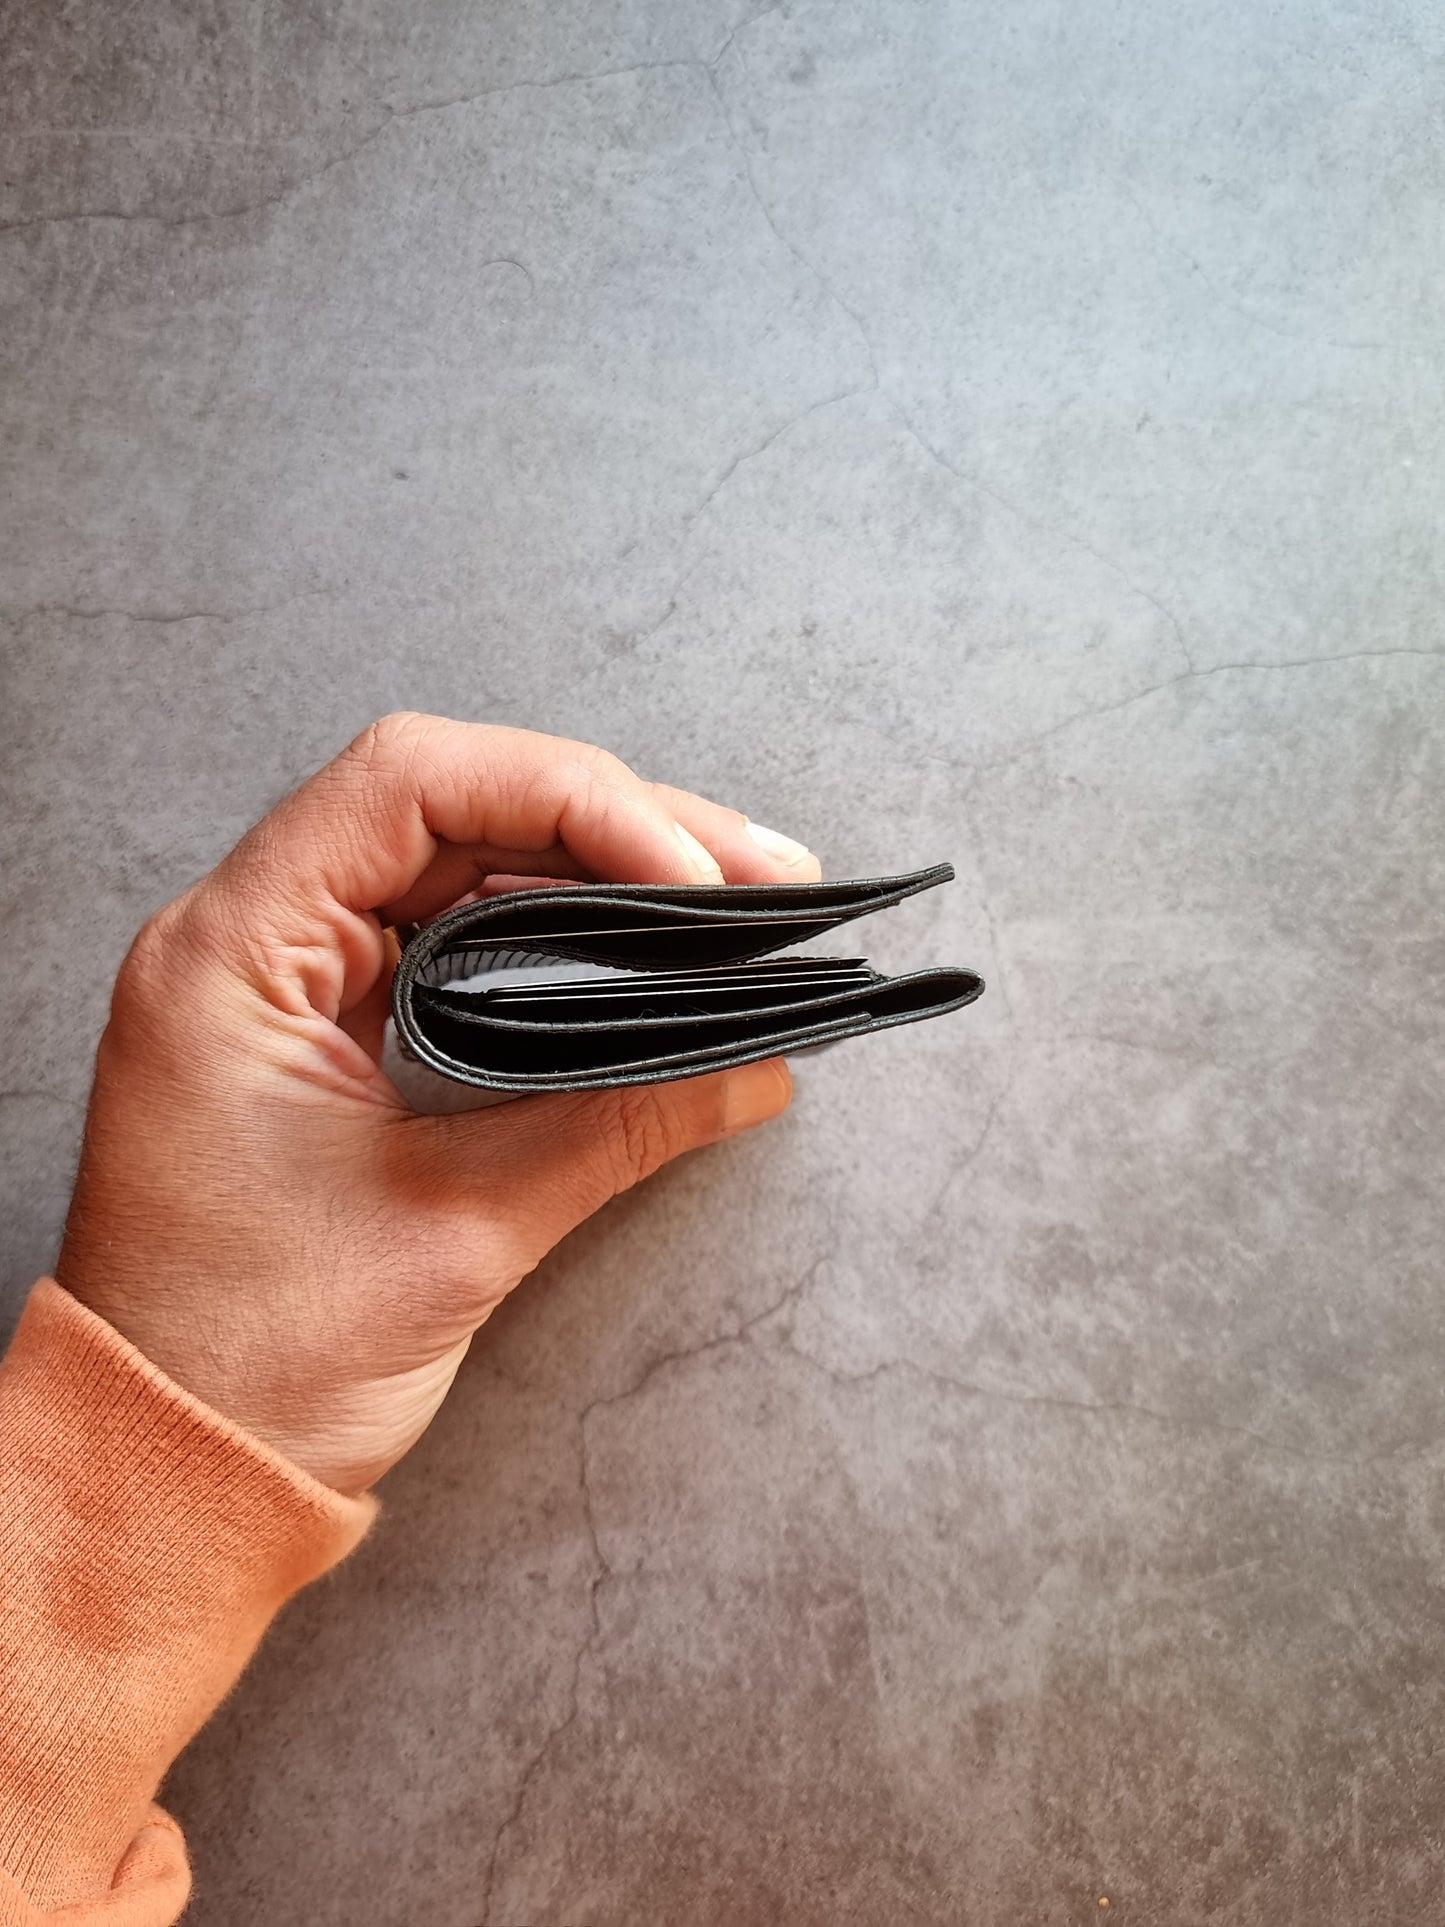 Slim Jim - Minimalistic Bi-fold wallet